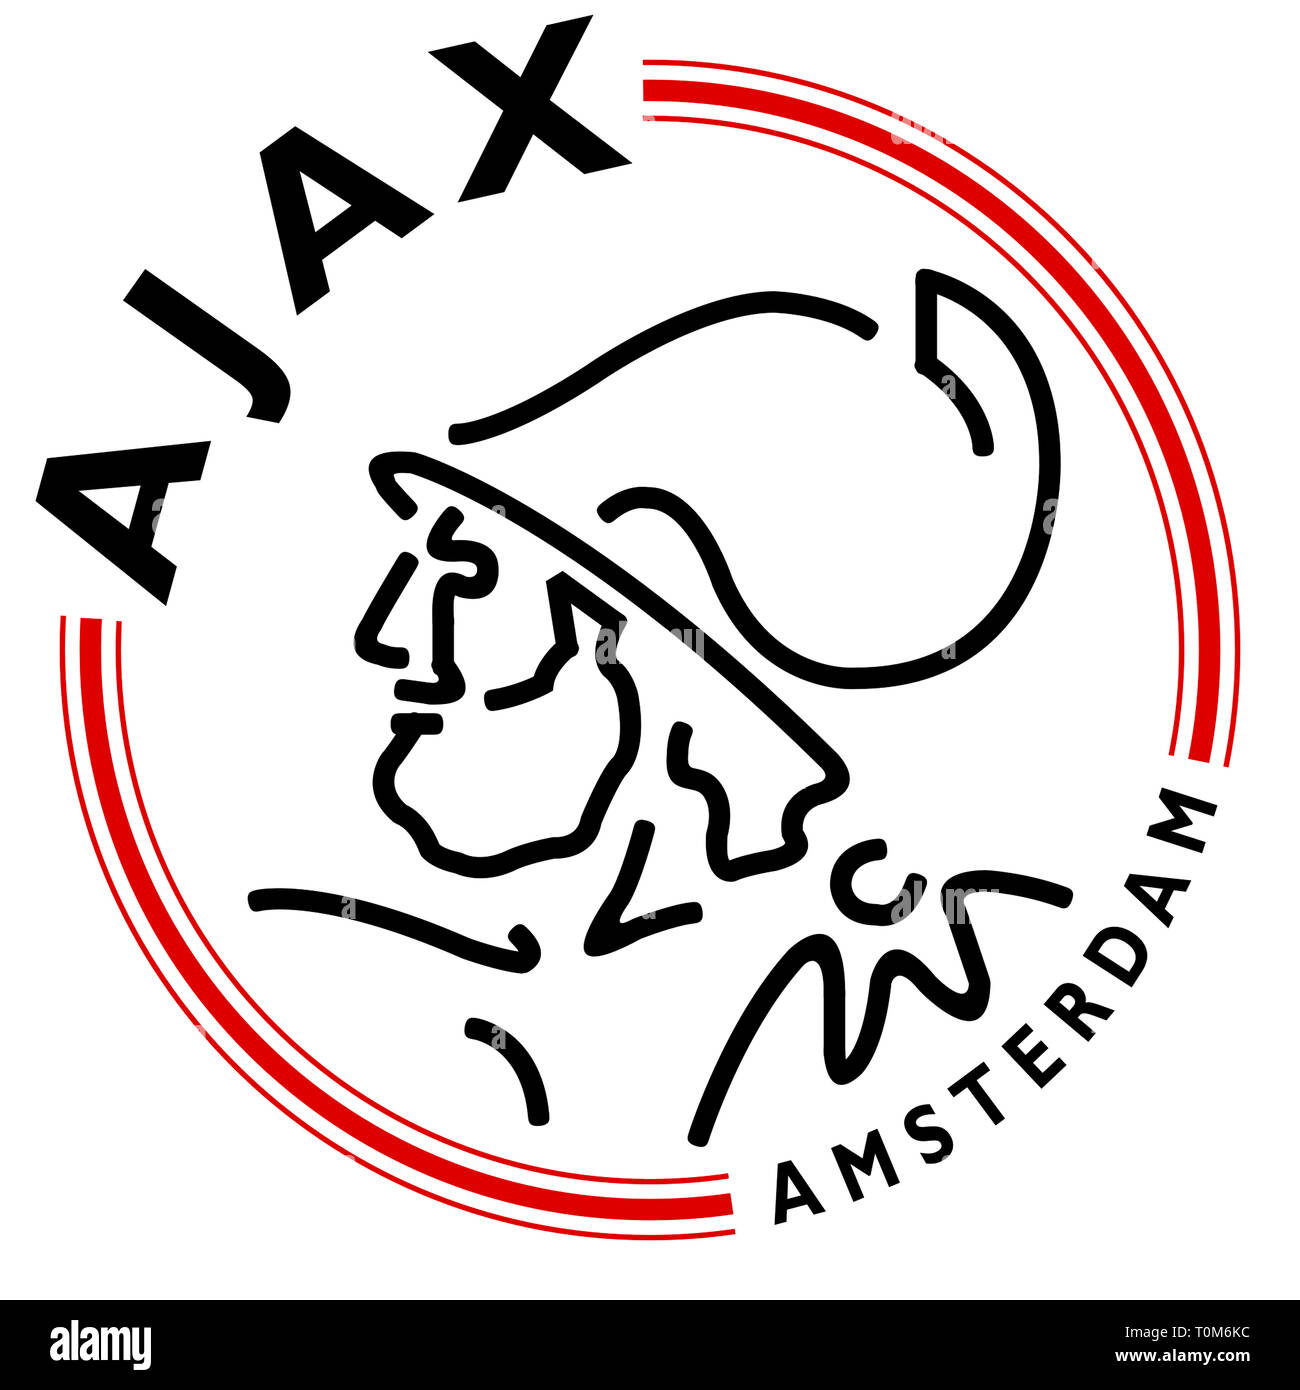 équipe de football hollandaise Banque d'images détourées - Alamy